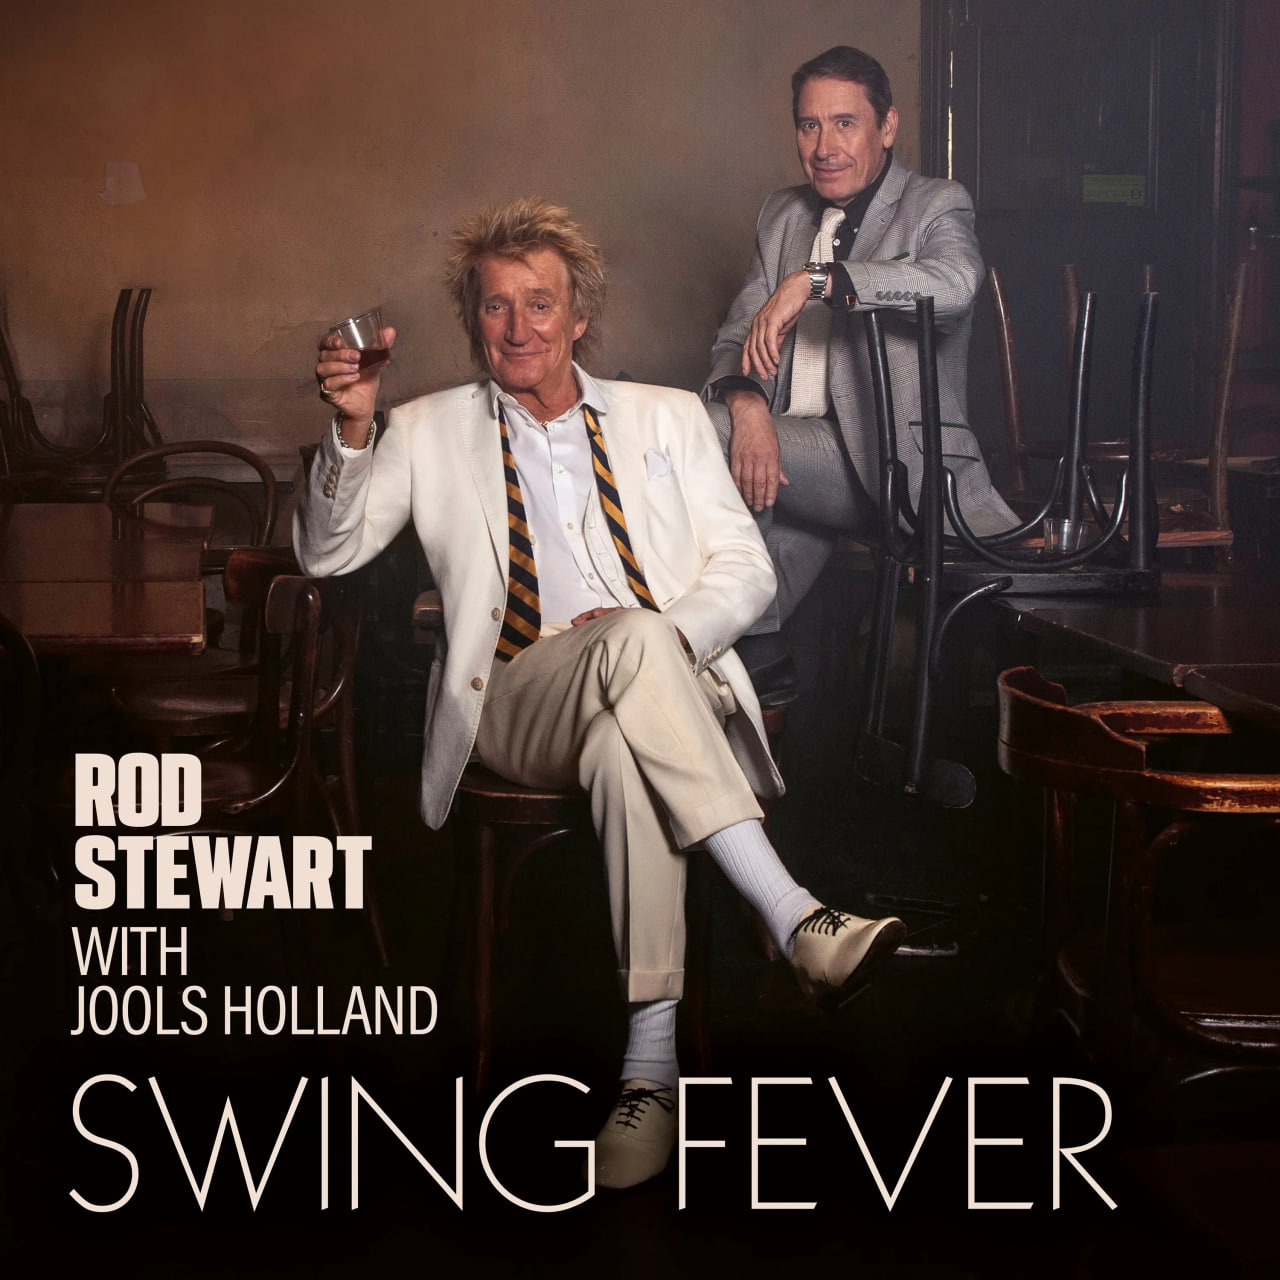 Джаз Warner Music Rod Stewart, Holland, Jools - Swing Fever (Green Vinyl LP) семнадцать 4 й альбом face the sun weverse albums ver